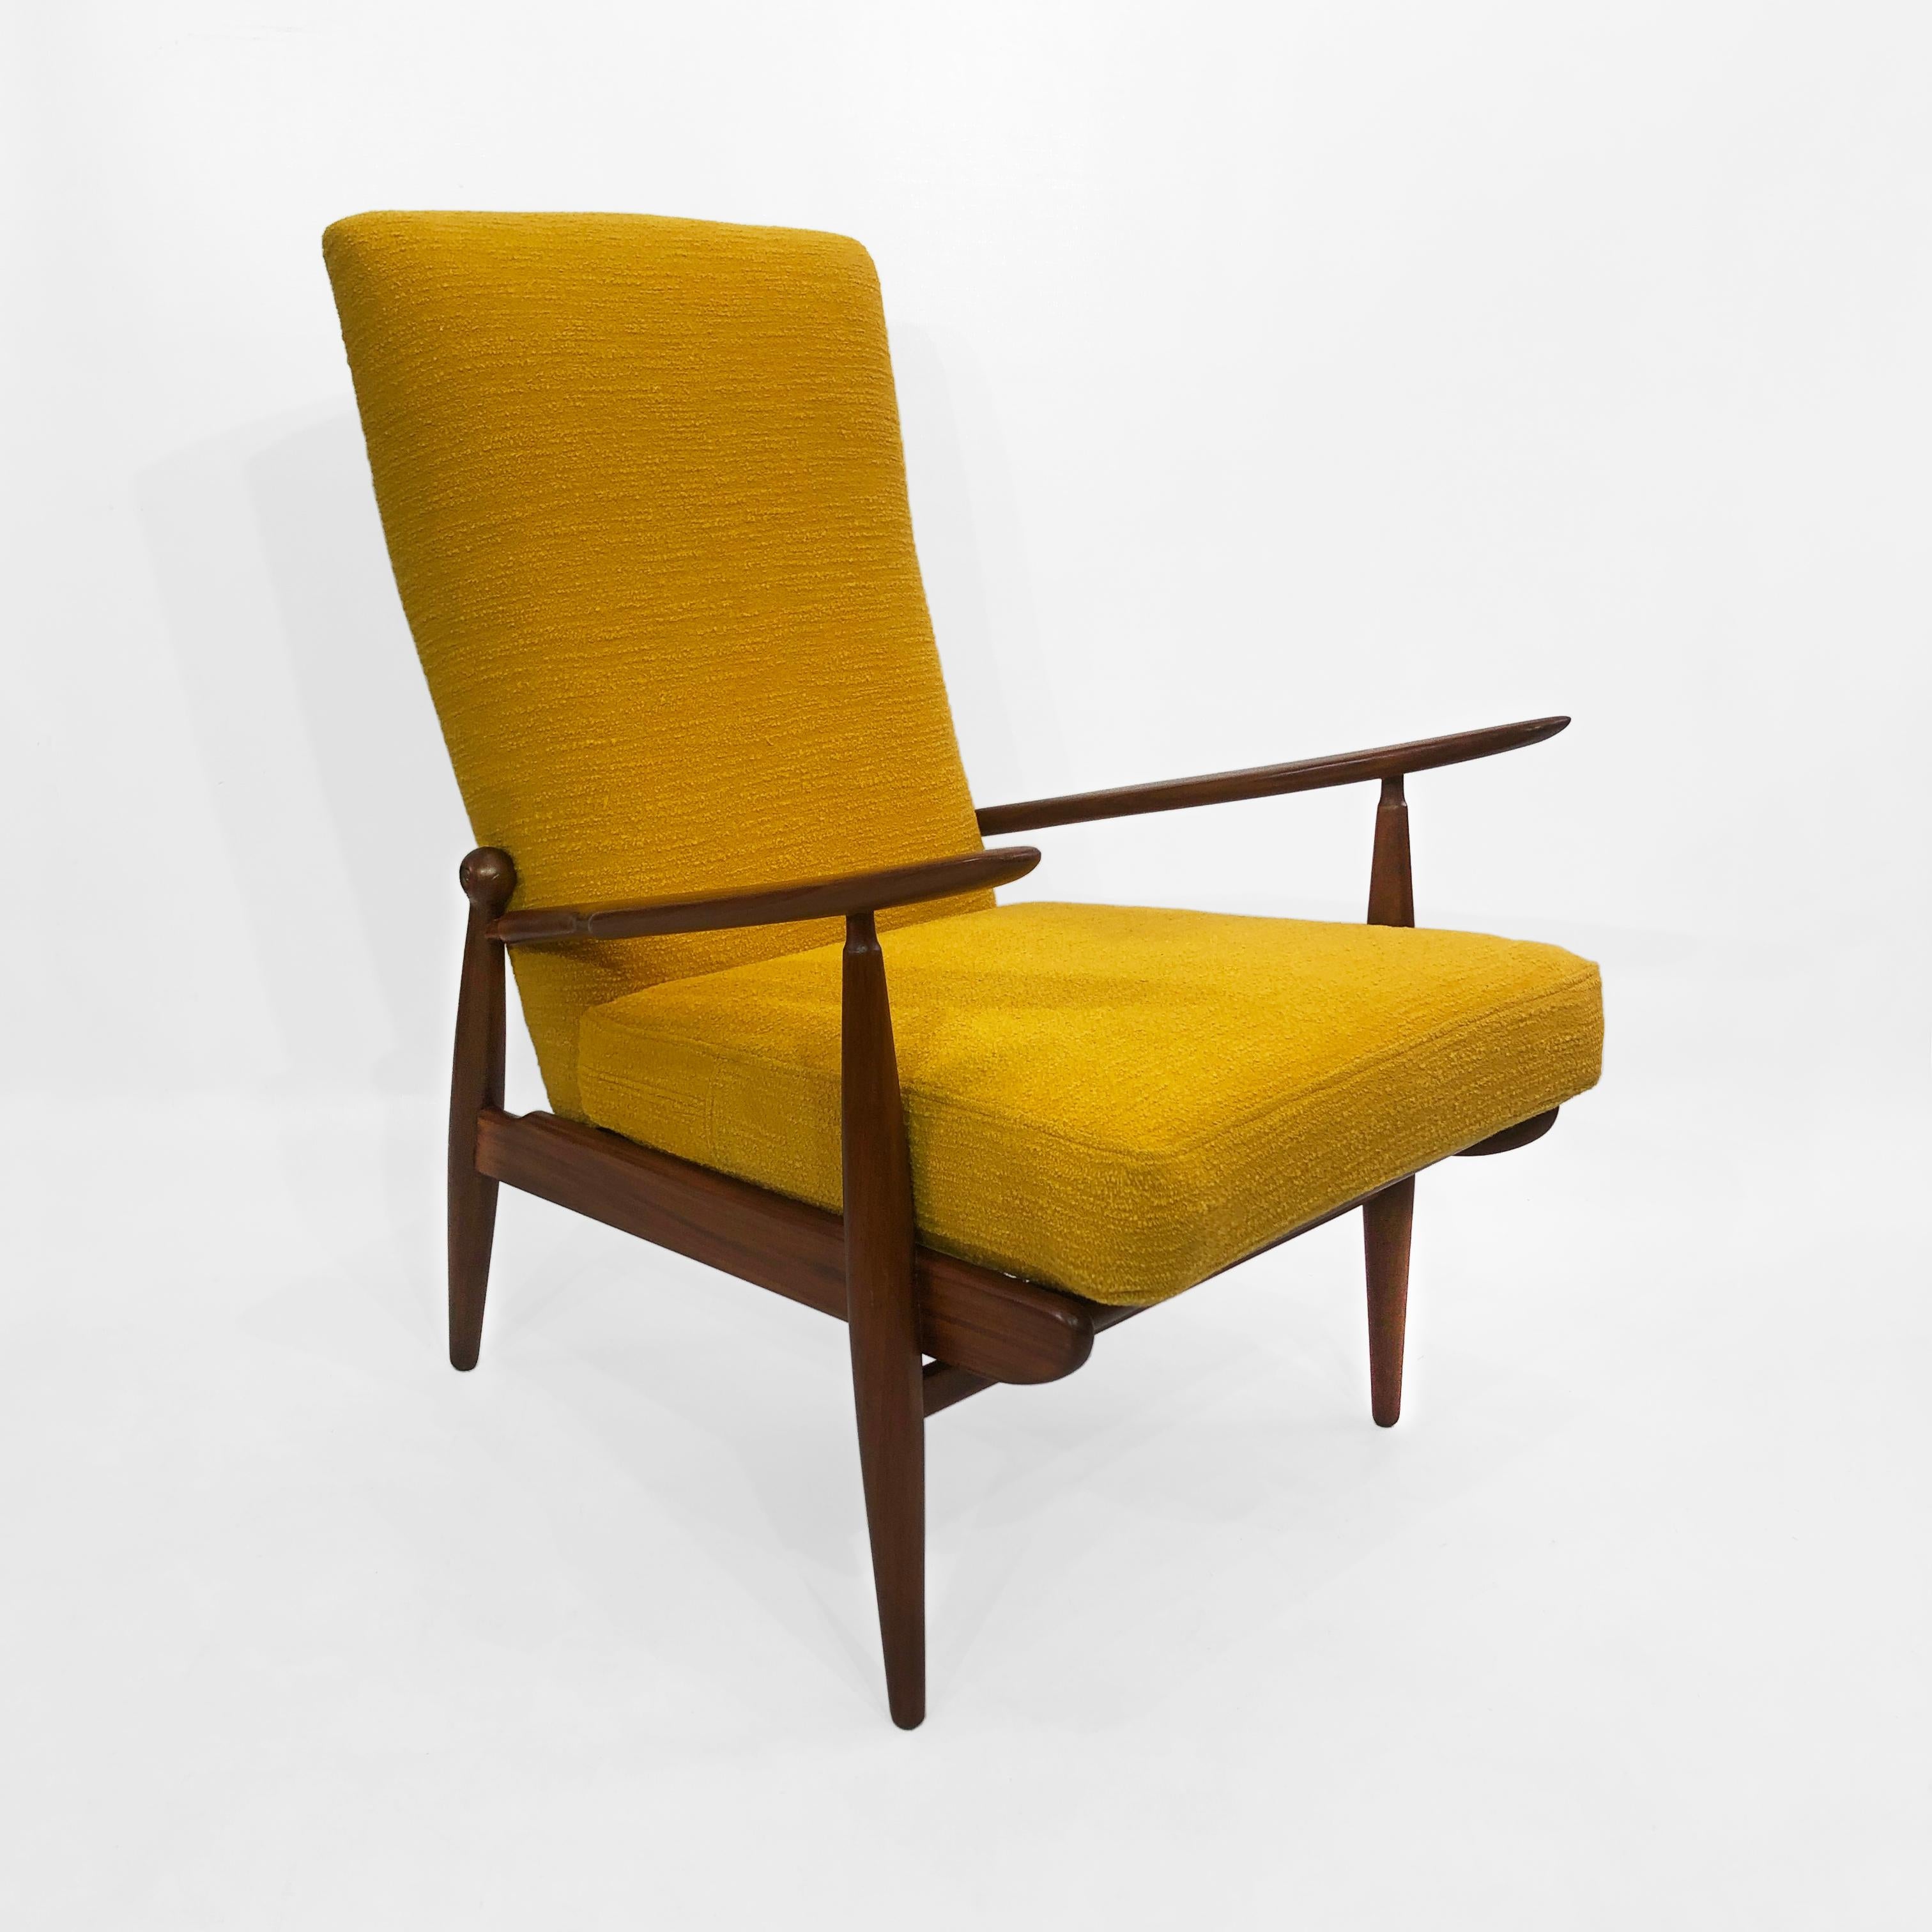 Dieser gelbe Bouclé-Sessel mit hoher Rückenlehne im dänischen Stil ist ein wunderbares Beispiel für europäisches Design aus der Mitte des Jahrhunderts. Das aerodynamische Design und die geschwungene Form des Holzrahmens machen ihn zu einer einfachen